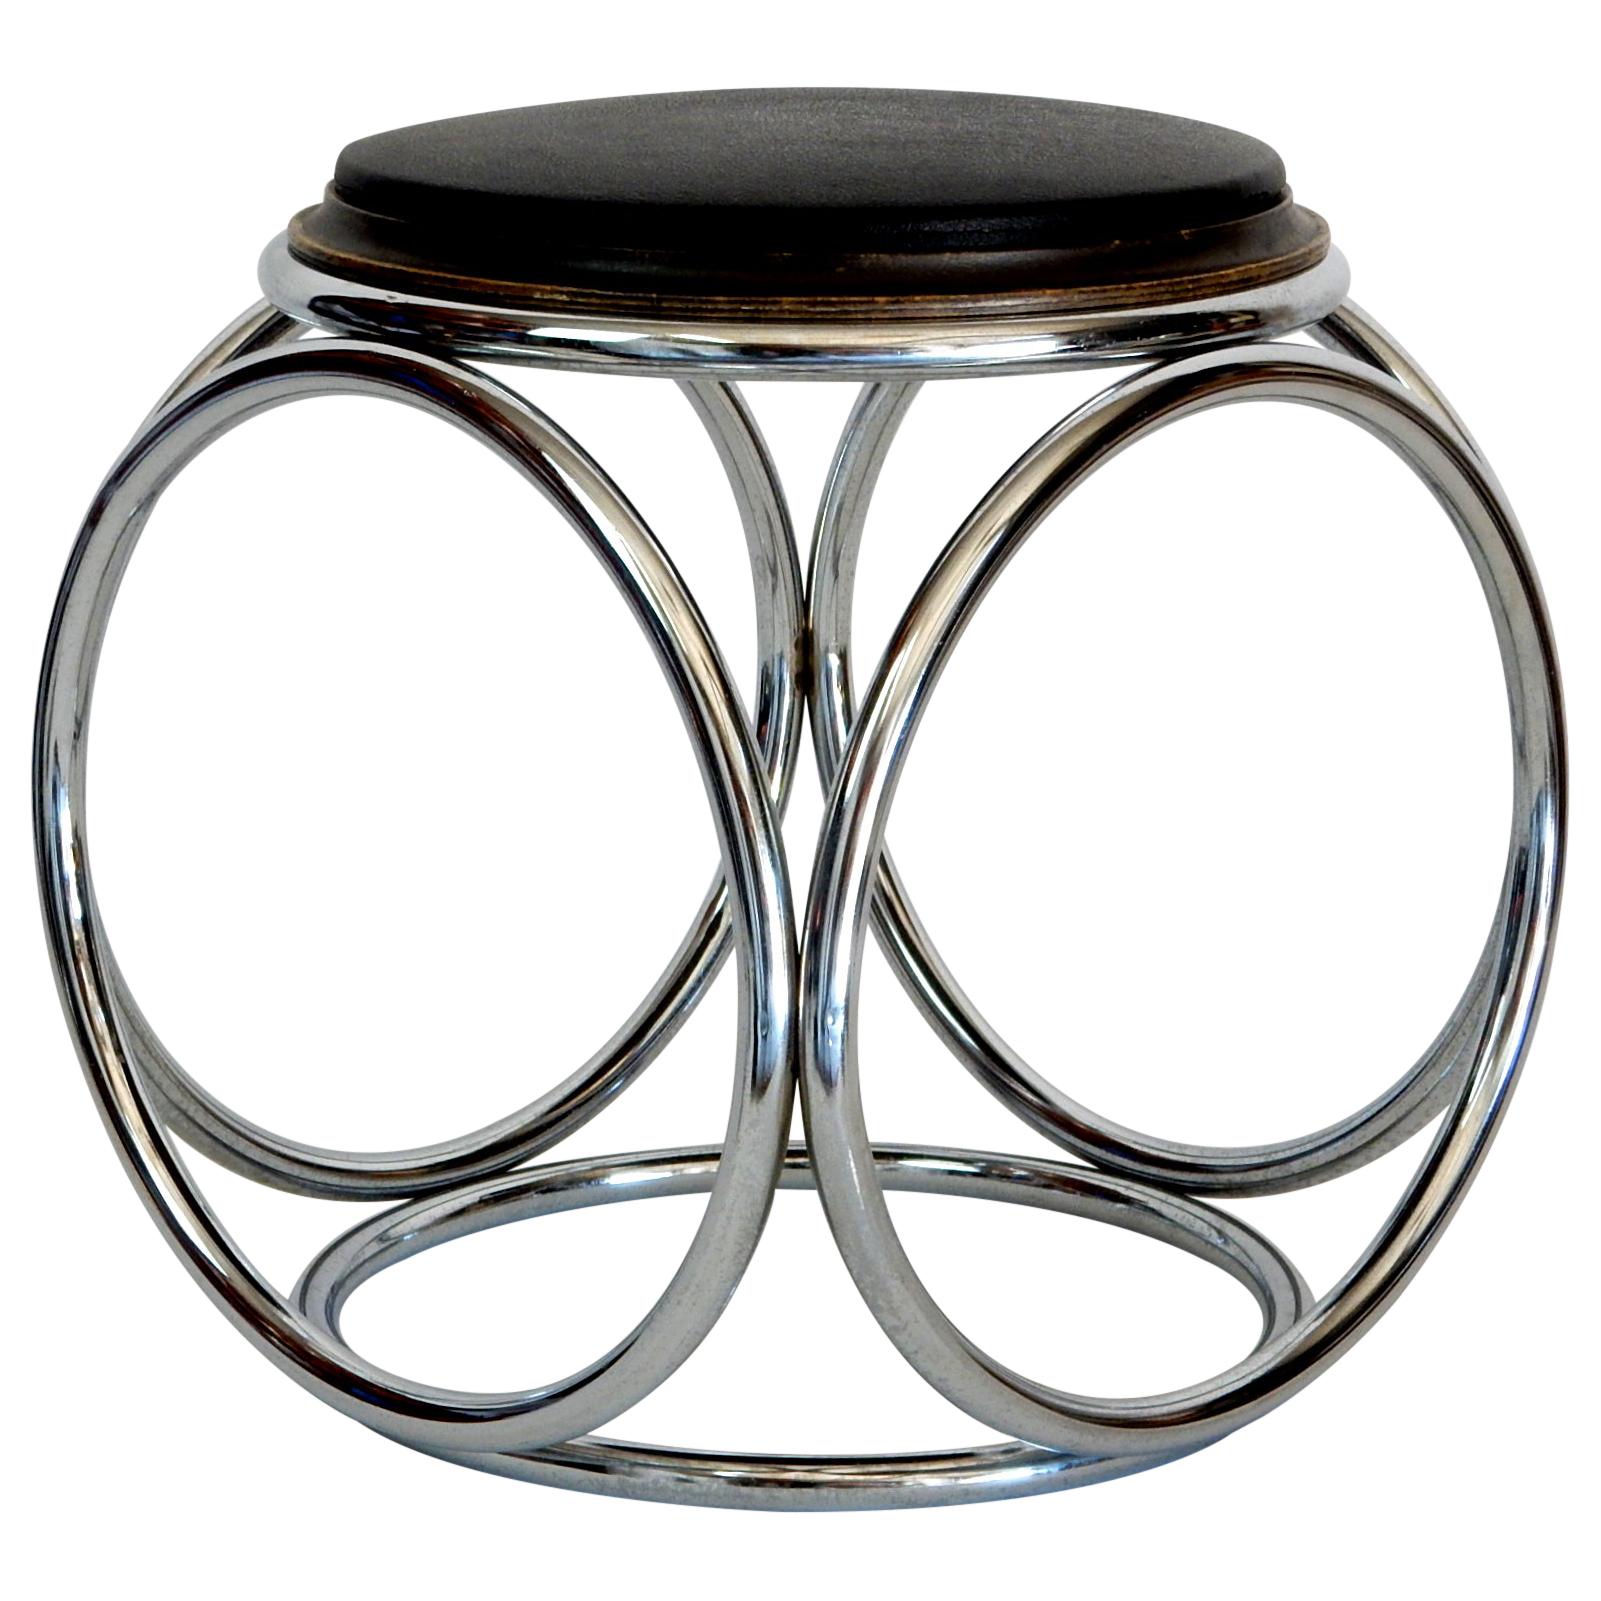 Tabouret ou table circulaire tubulaire Art Déco français Jean-Pierre Laporte Design